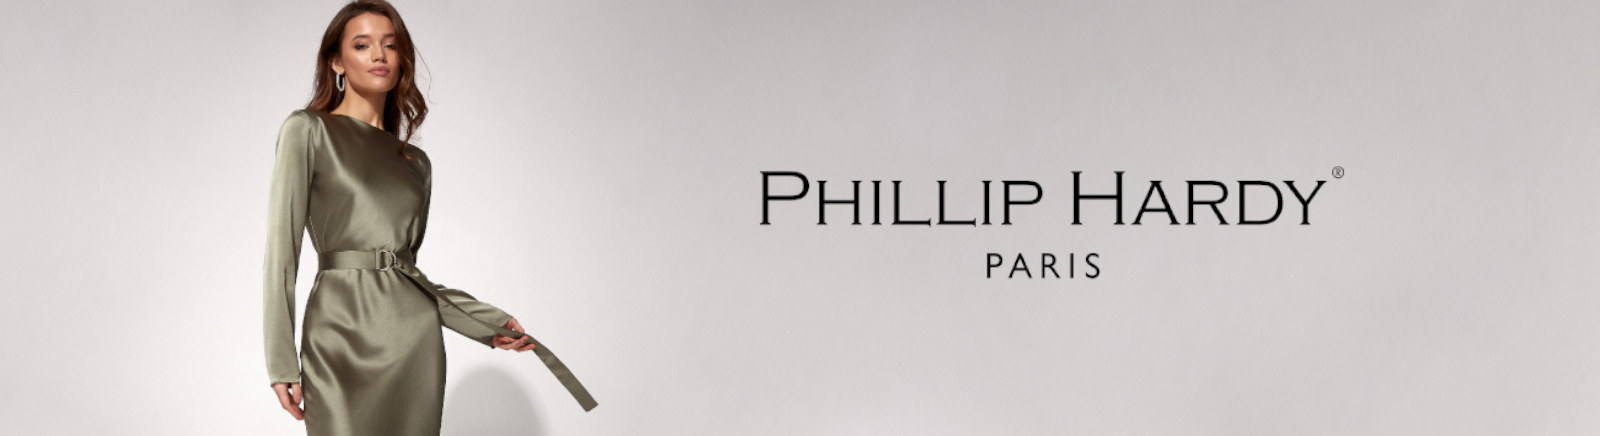 Phillip Hardy Schuhe kaufen » aufregende Designs | Prange